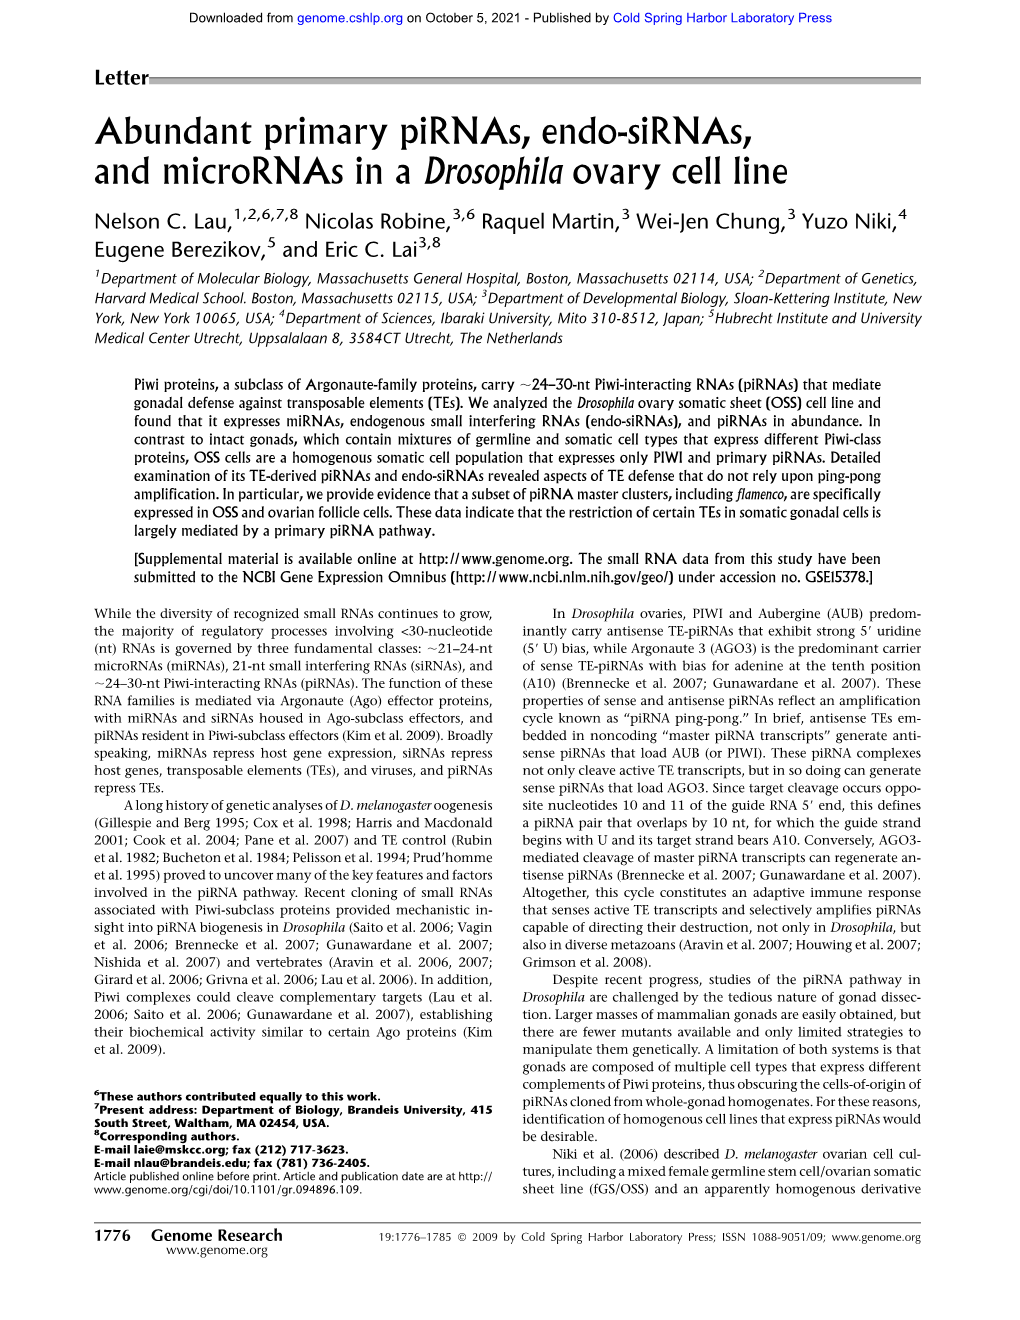 Abundant Primary Pirnas, Endo-Sirnas, and Micrornas in a Drosophila Ovary Cell Line